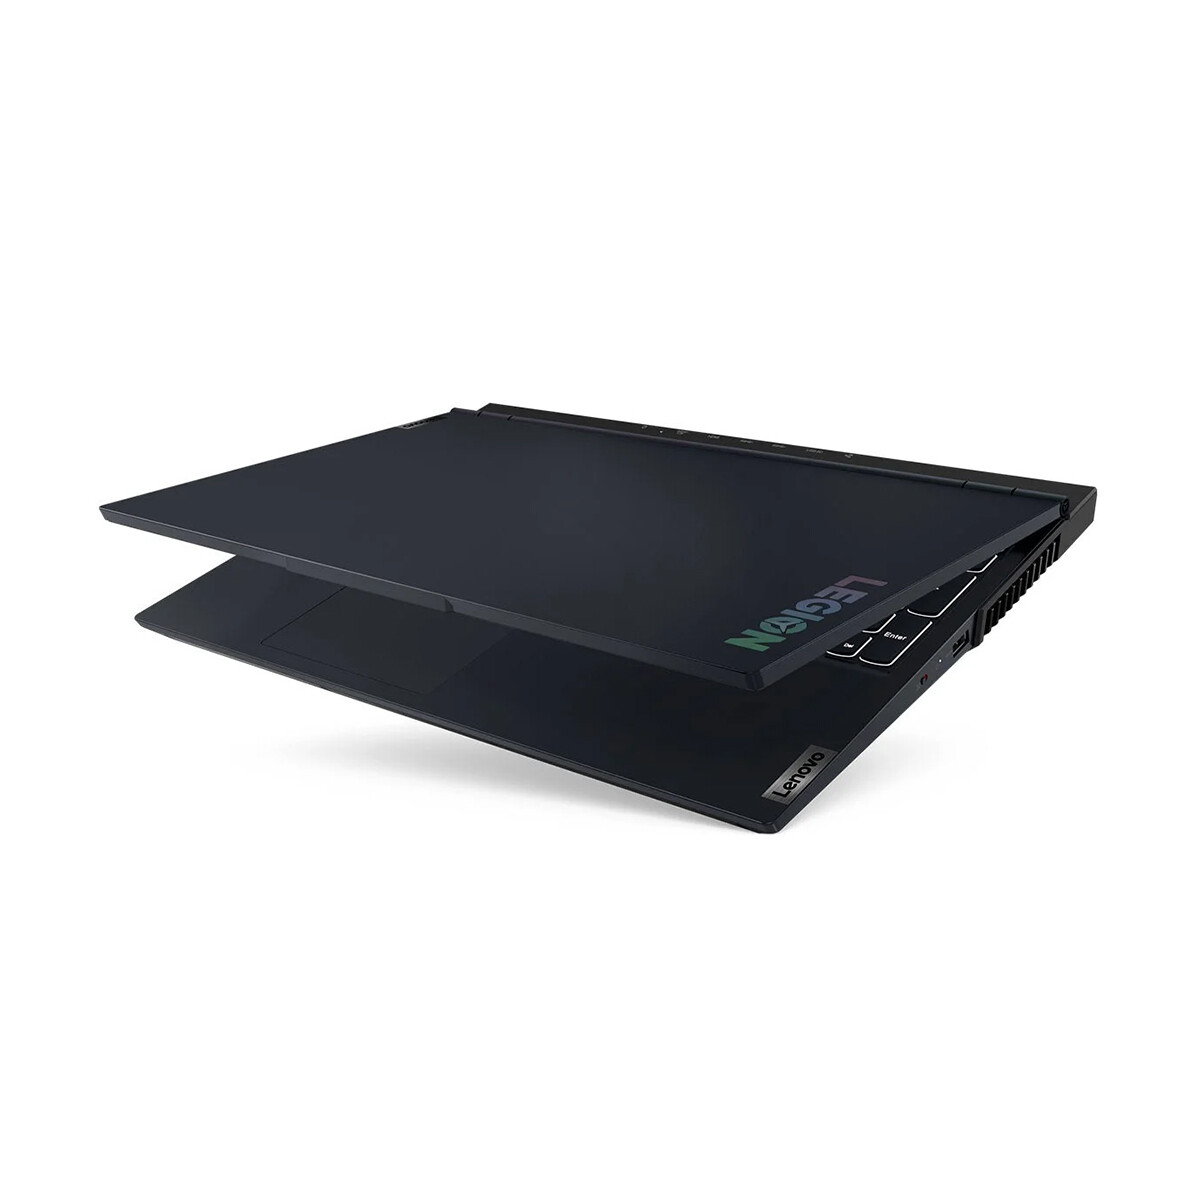 Notebook Lenovo Legion 5 Gaming 15ACH6 15.6" 512GB SSD / 8GB RAM Ryzen 5 5600H GeForce RTX 3050 Blue